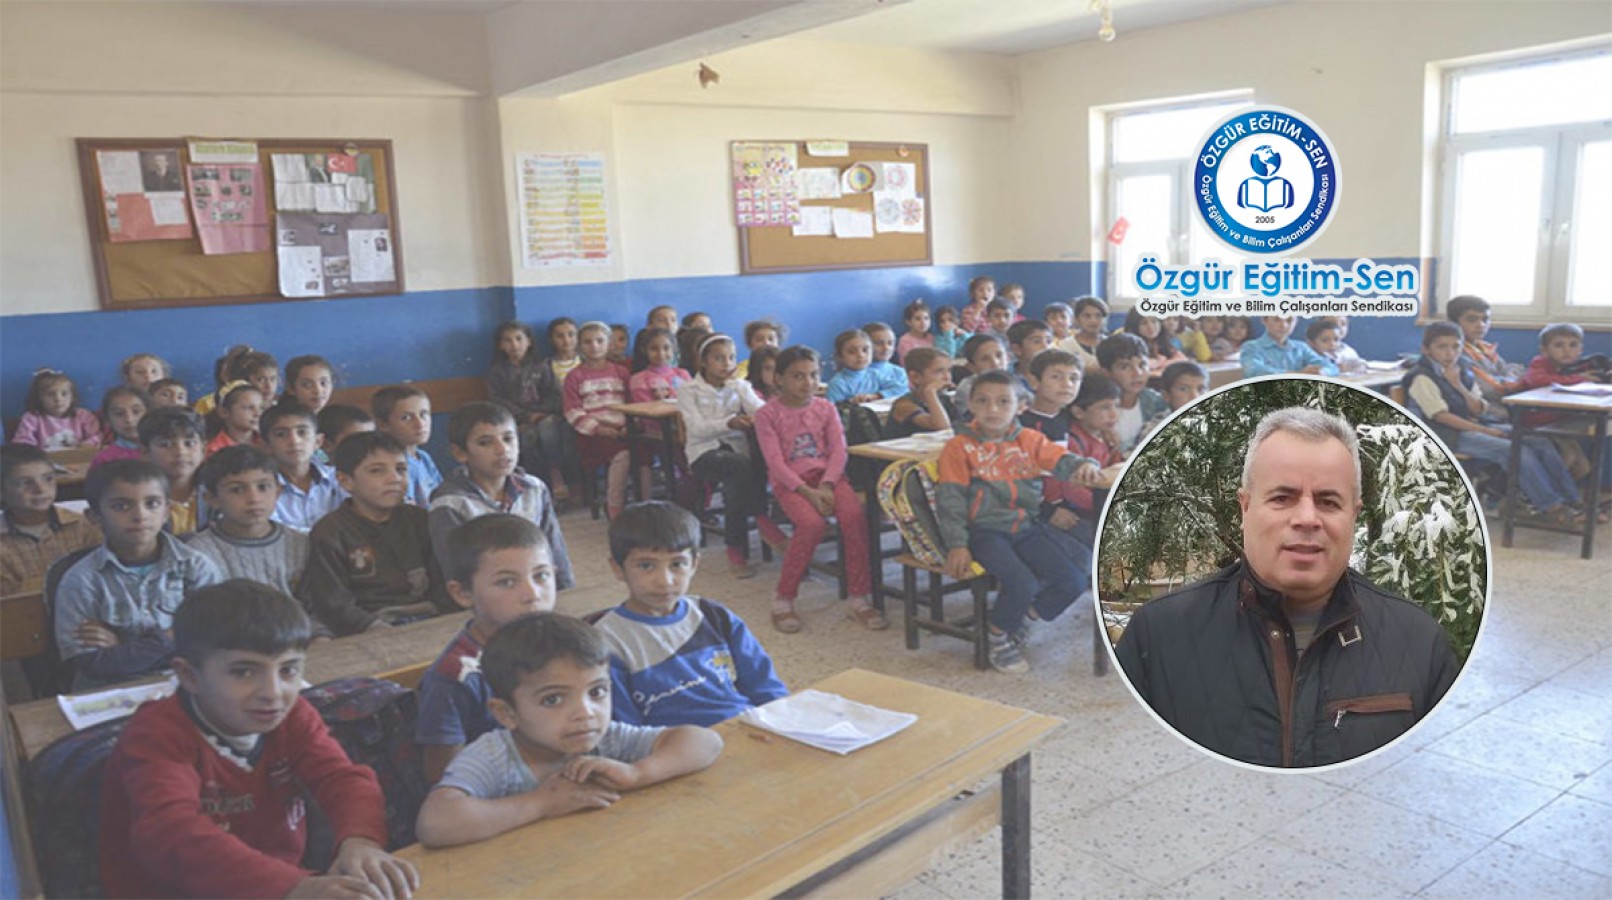 Eğitim sendikası temsilcisi Urfa’da eğitimin iyileştirilmesi için öneriler getirdi;